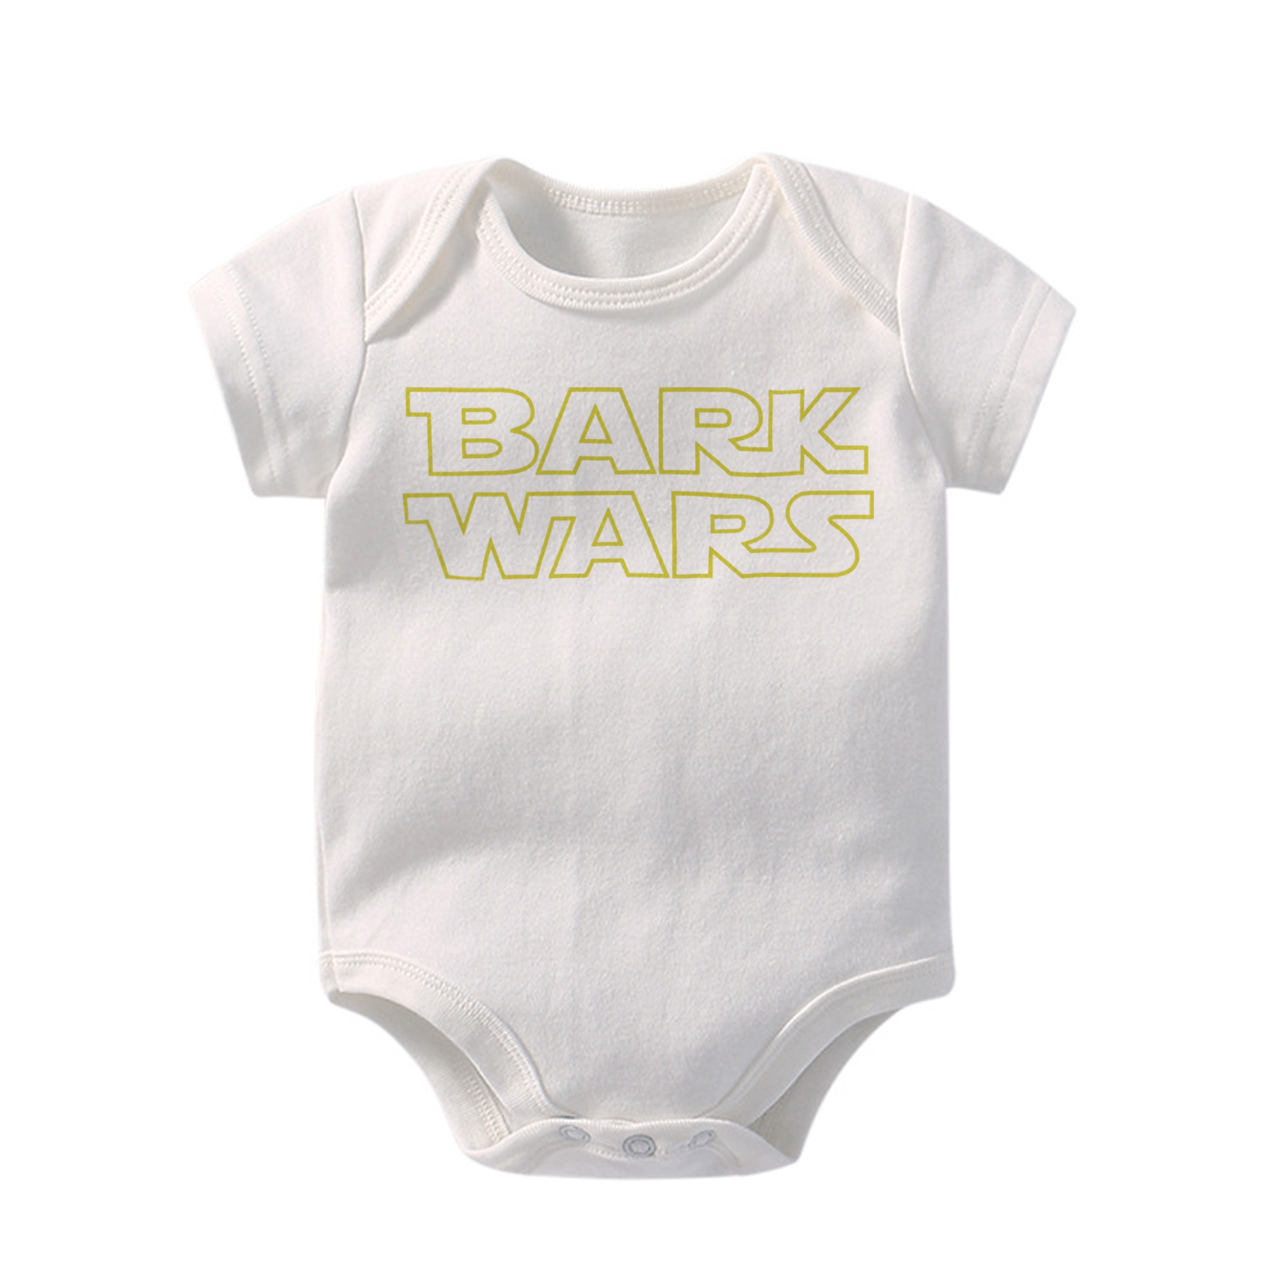 Bark Wars Bodysuit For Baby